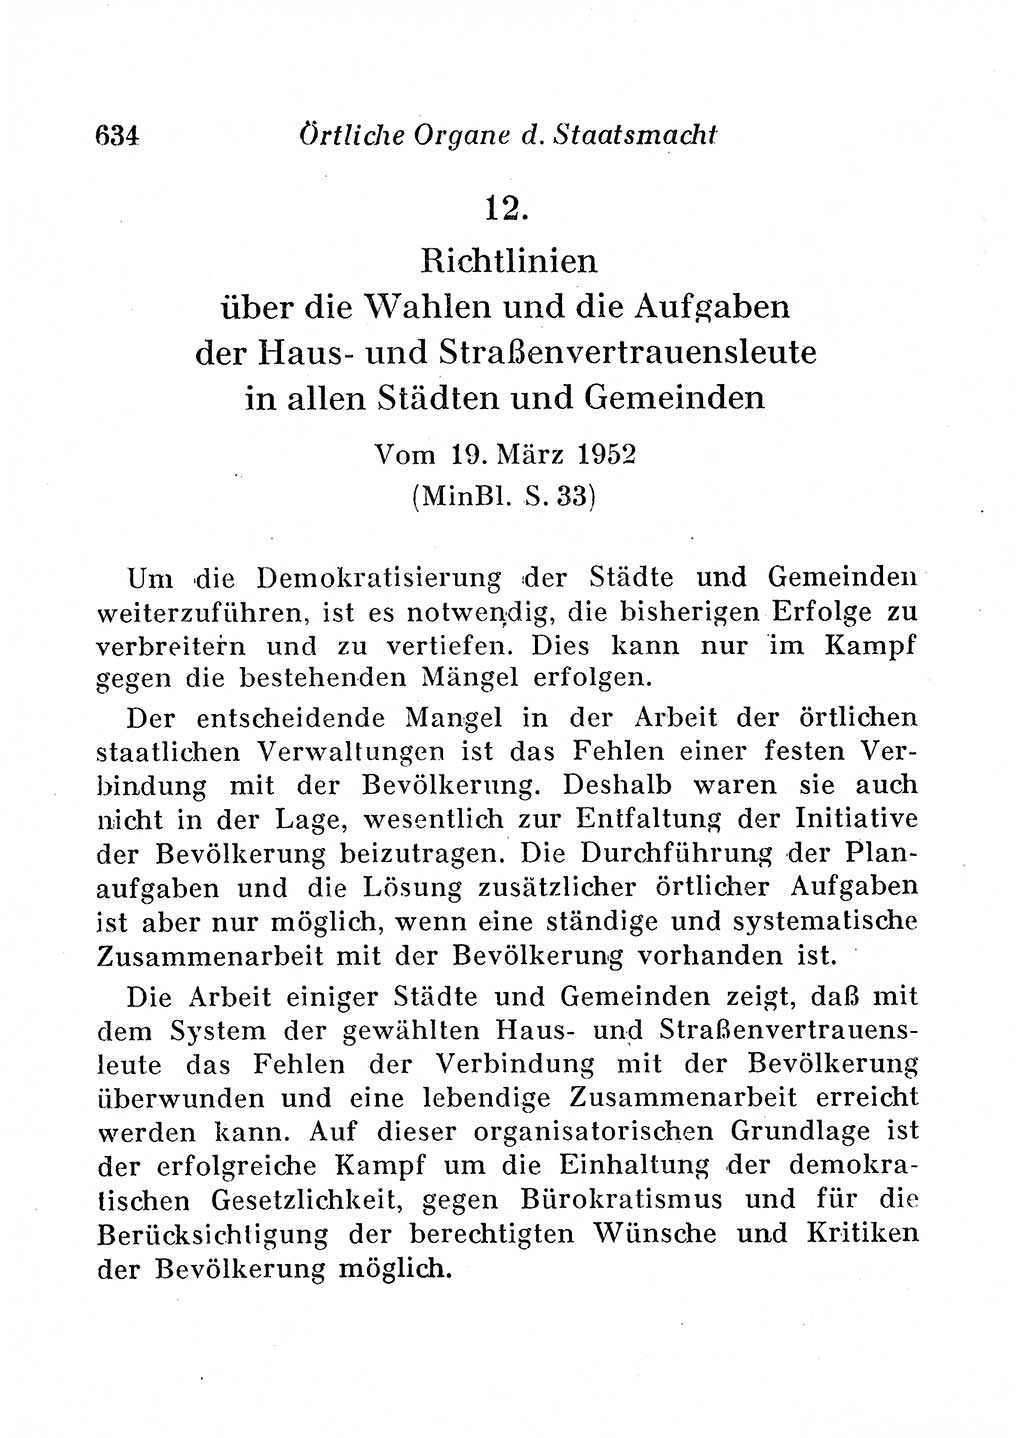 Staats- und verwaltungsrechtliche Gesetze der Deutschen Demokratischen Republik (DDR) 1958, Seite 634 (StVerwR Ges. DDR 1958, S. 634)